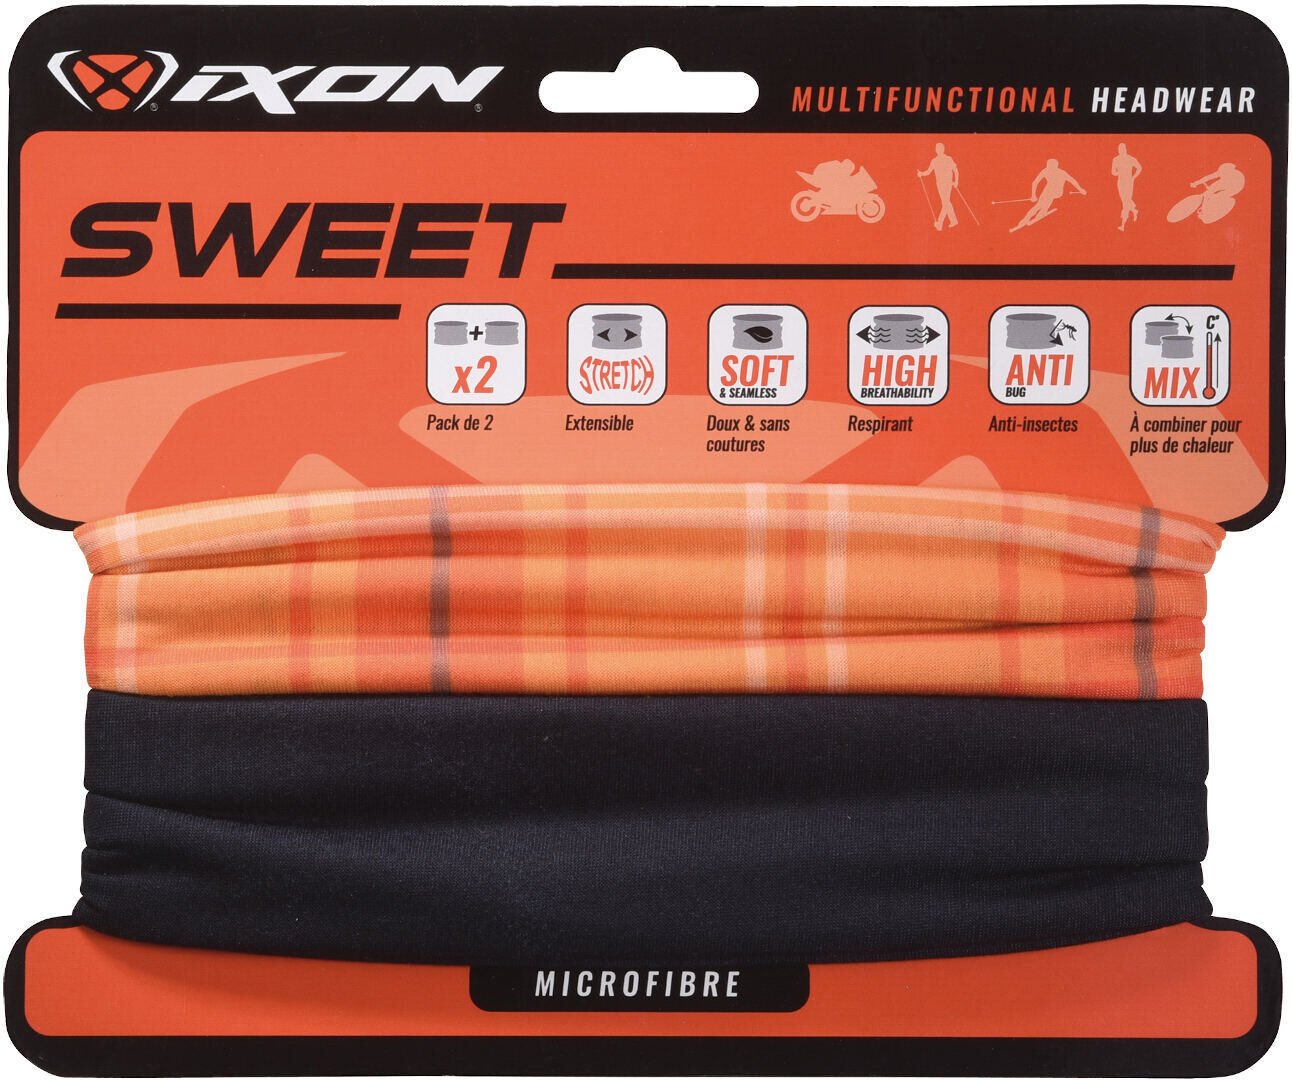 Ixon Sweet Square Headwear multifuncional